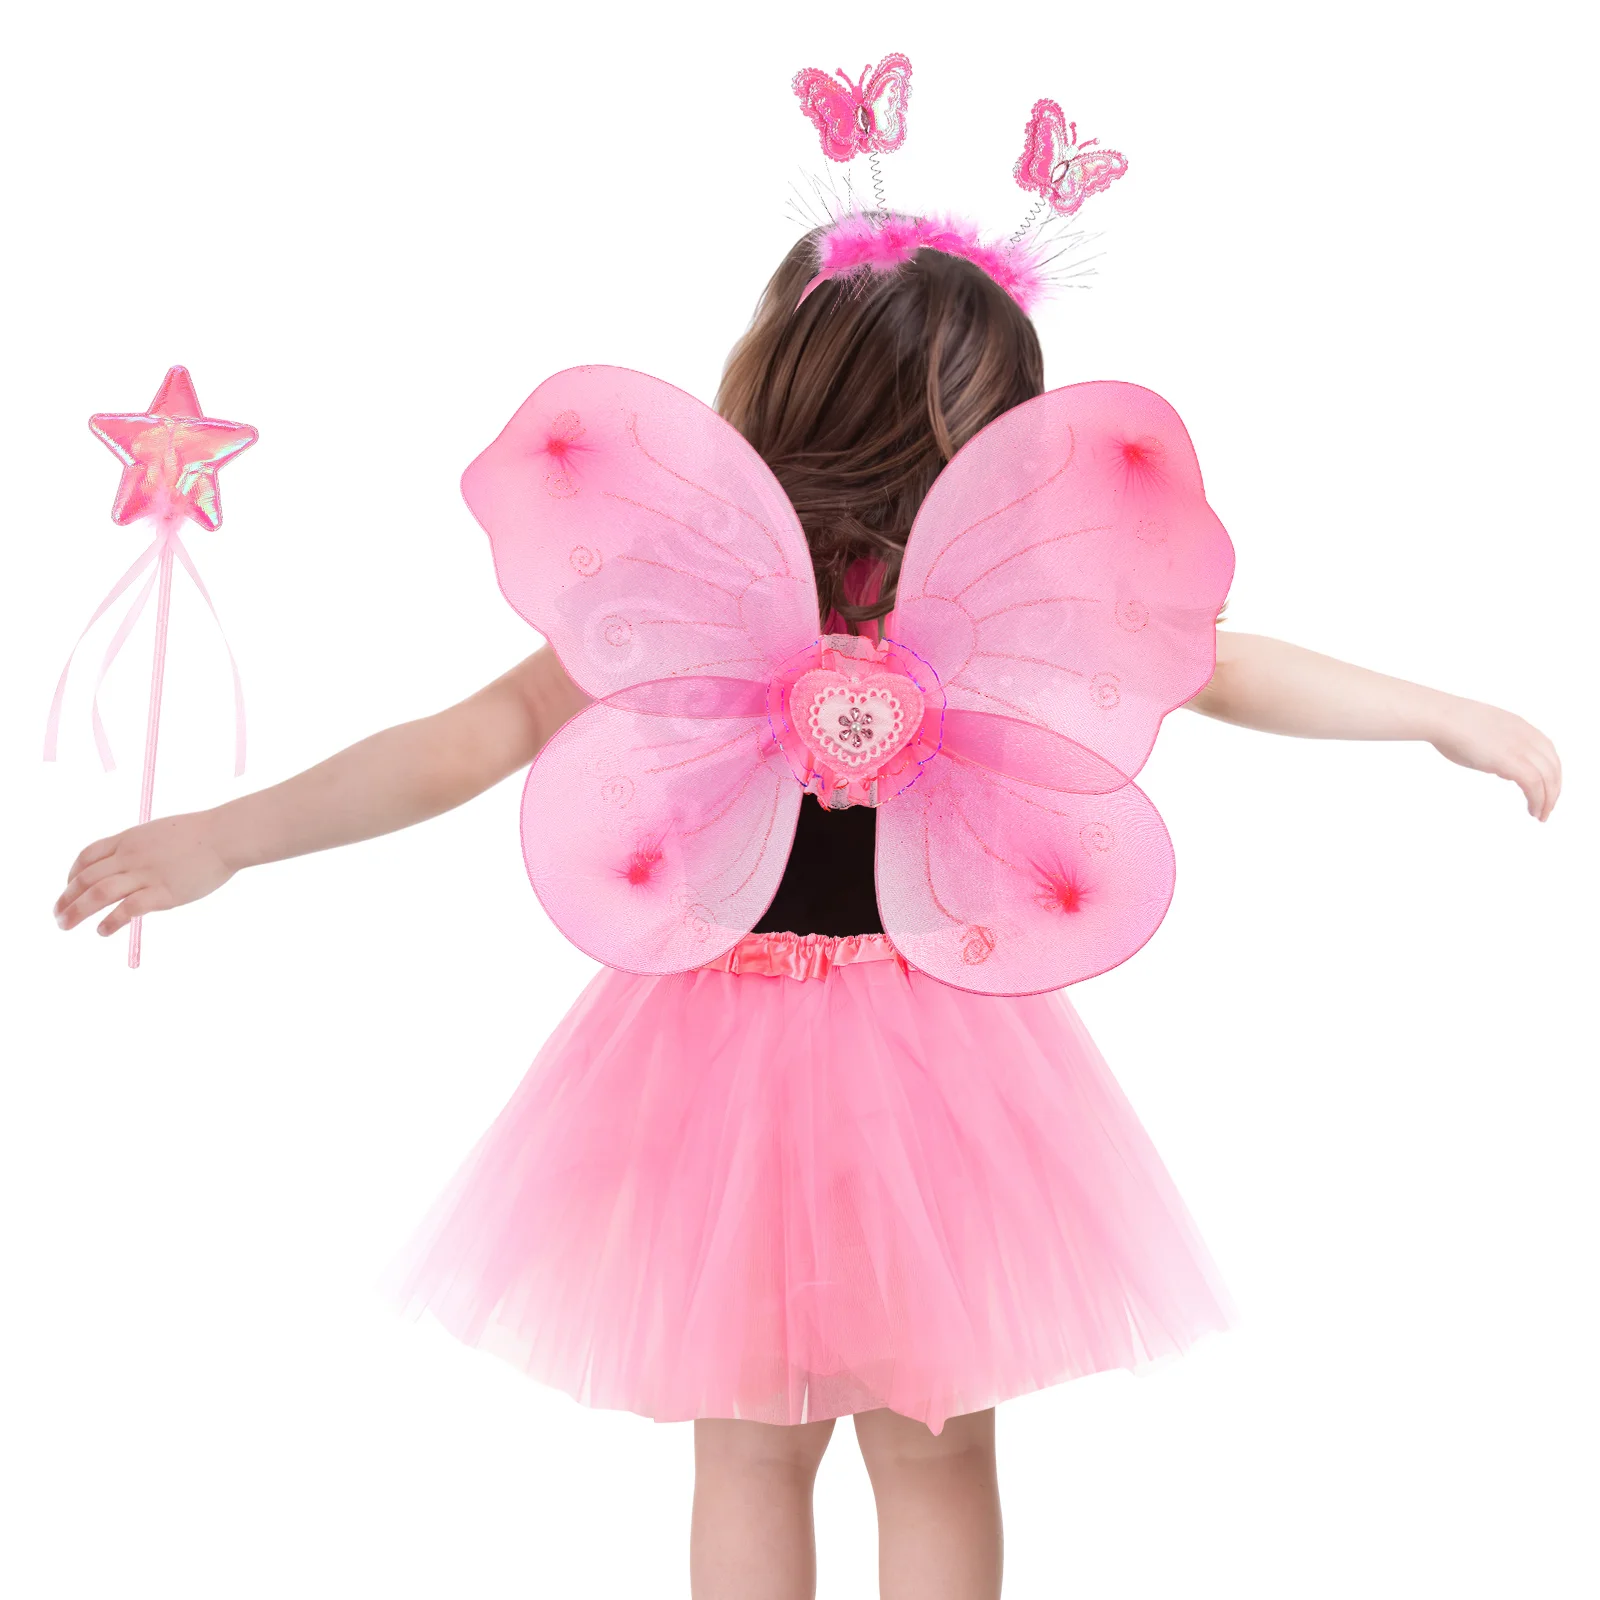 

Сказочный костюм для девочек, юбка-пачка, повязка на голову с крыльями бабочки и сказочные палочки, взрослые крылья